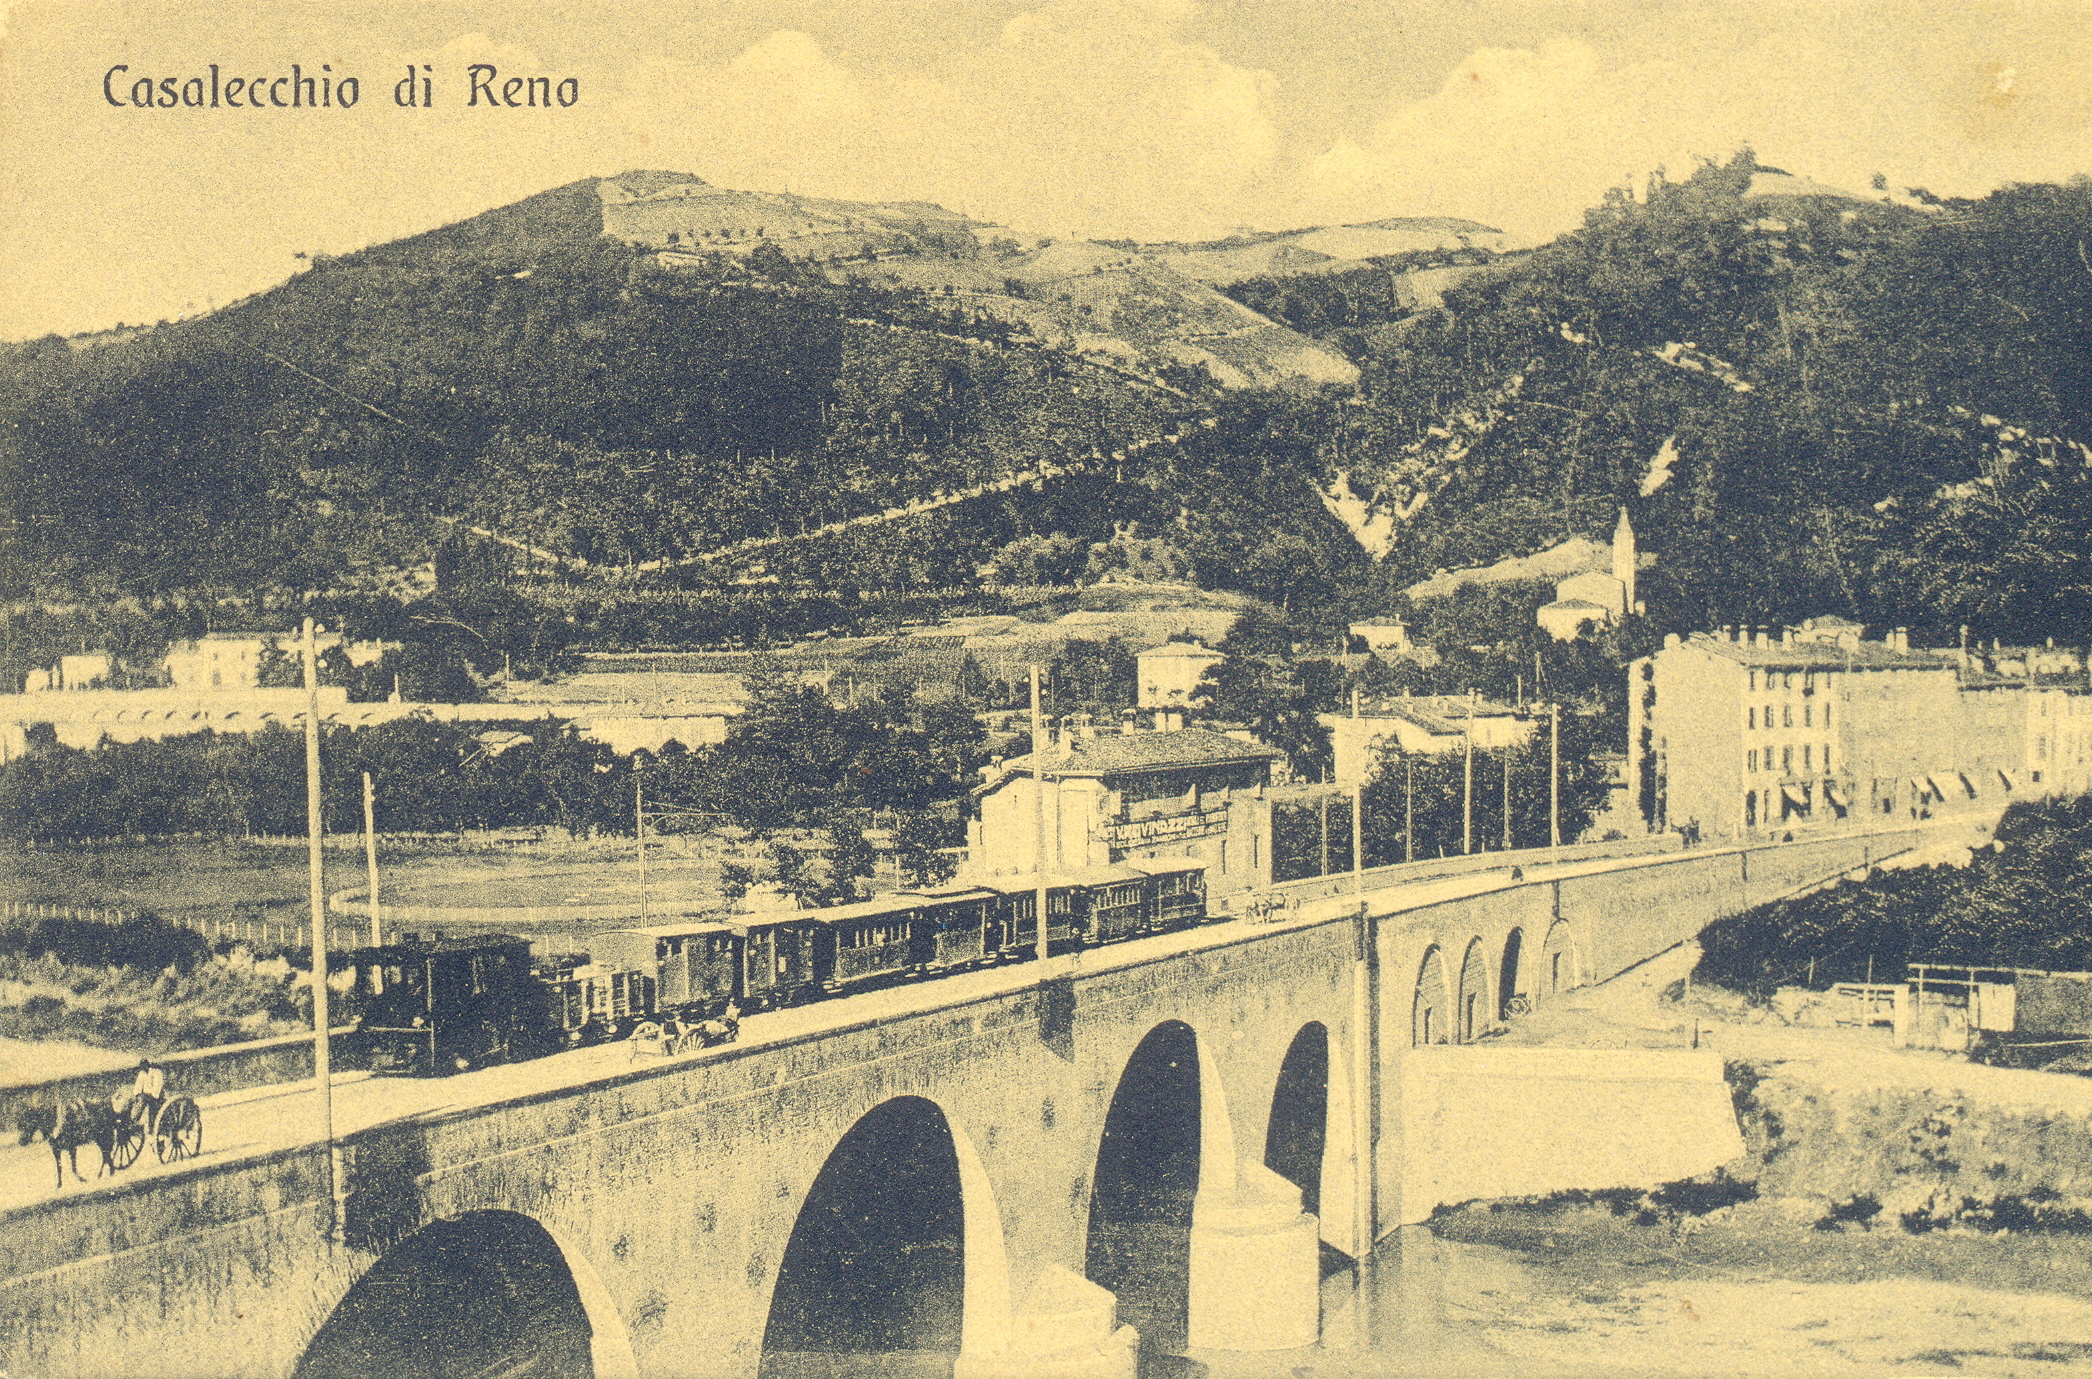 Il vaporino sul ponte a Casalecchio (Archivio fotografico Biblioteca C. Pavese)